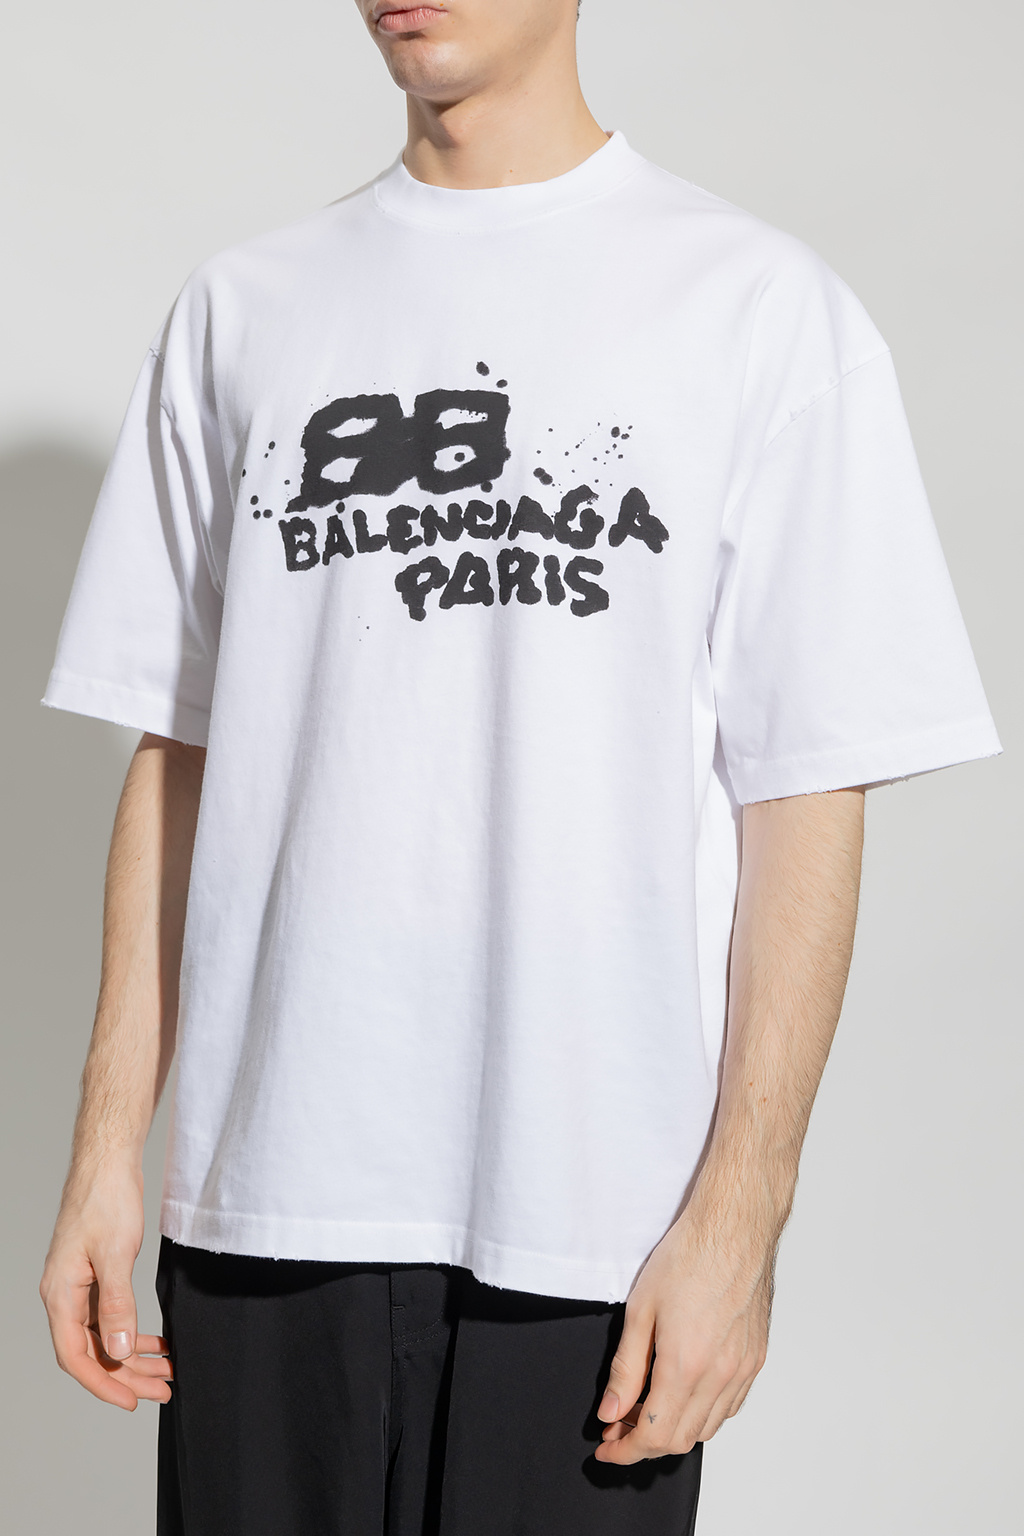 Balenciaga Teal Jersey plaque shirt